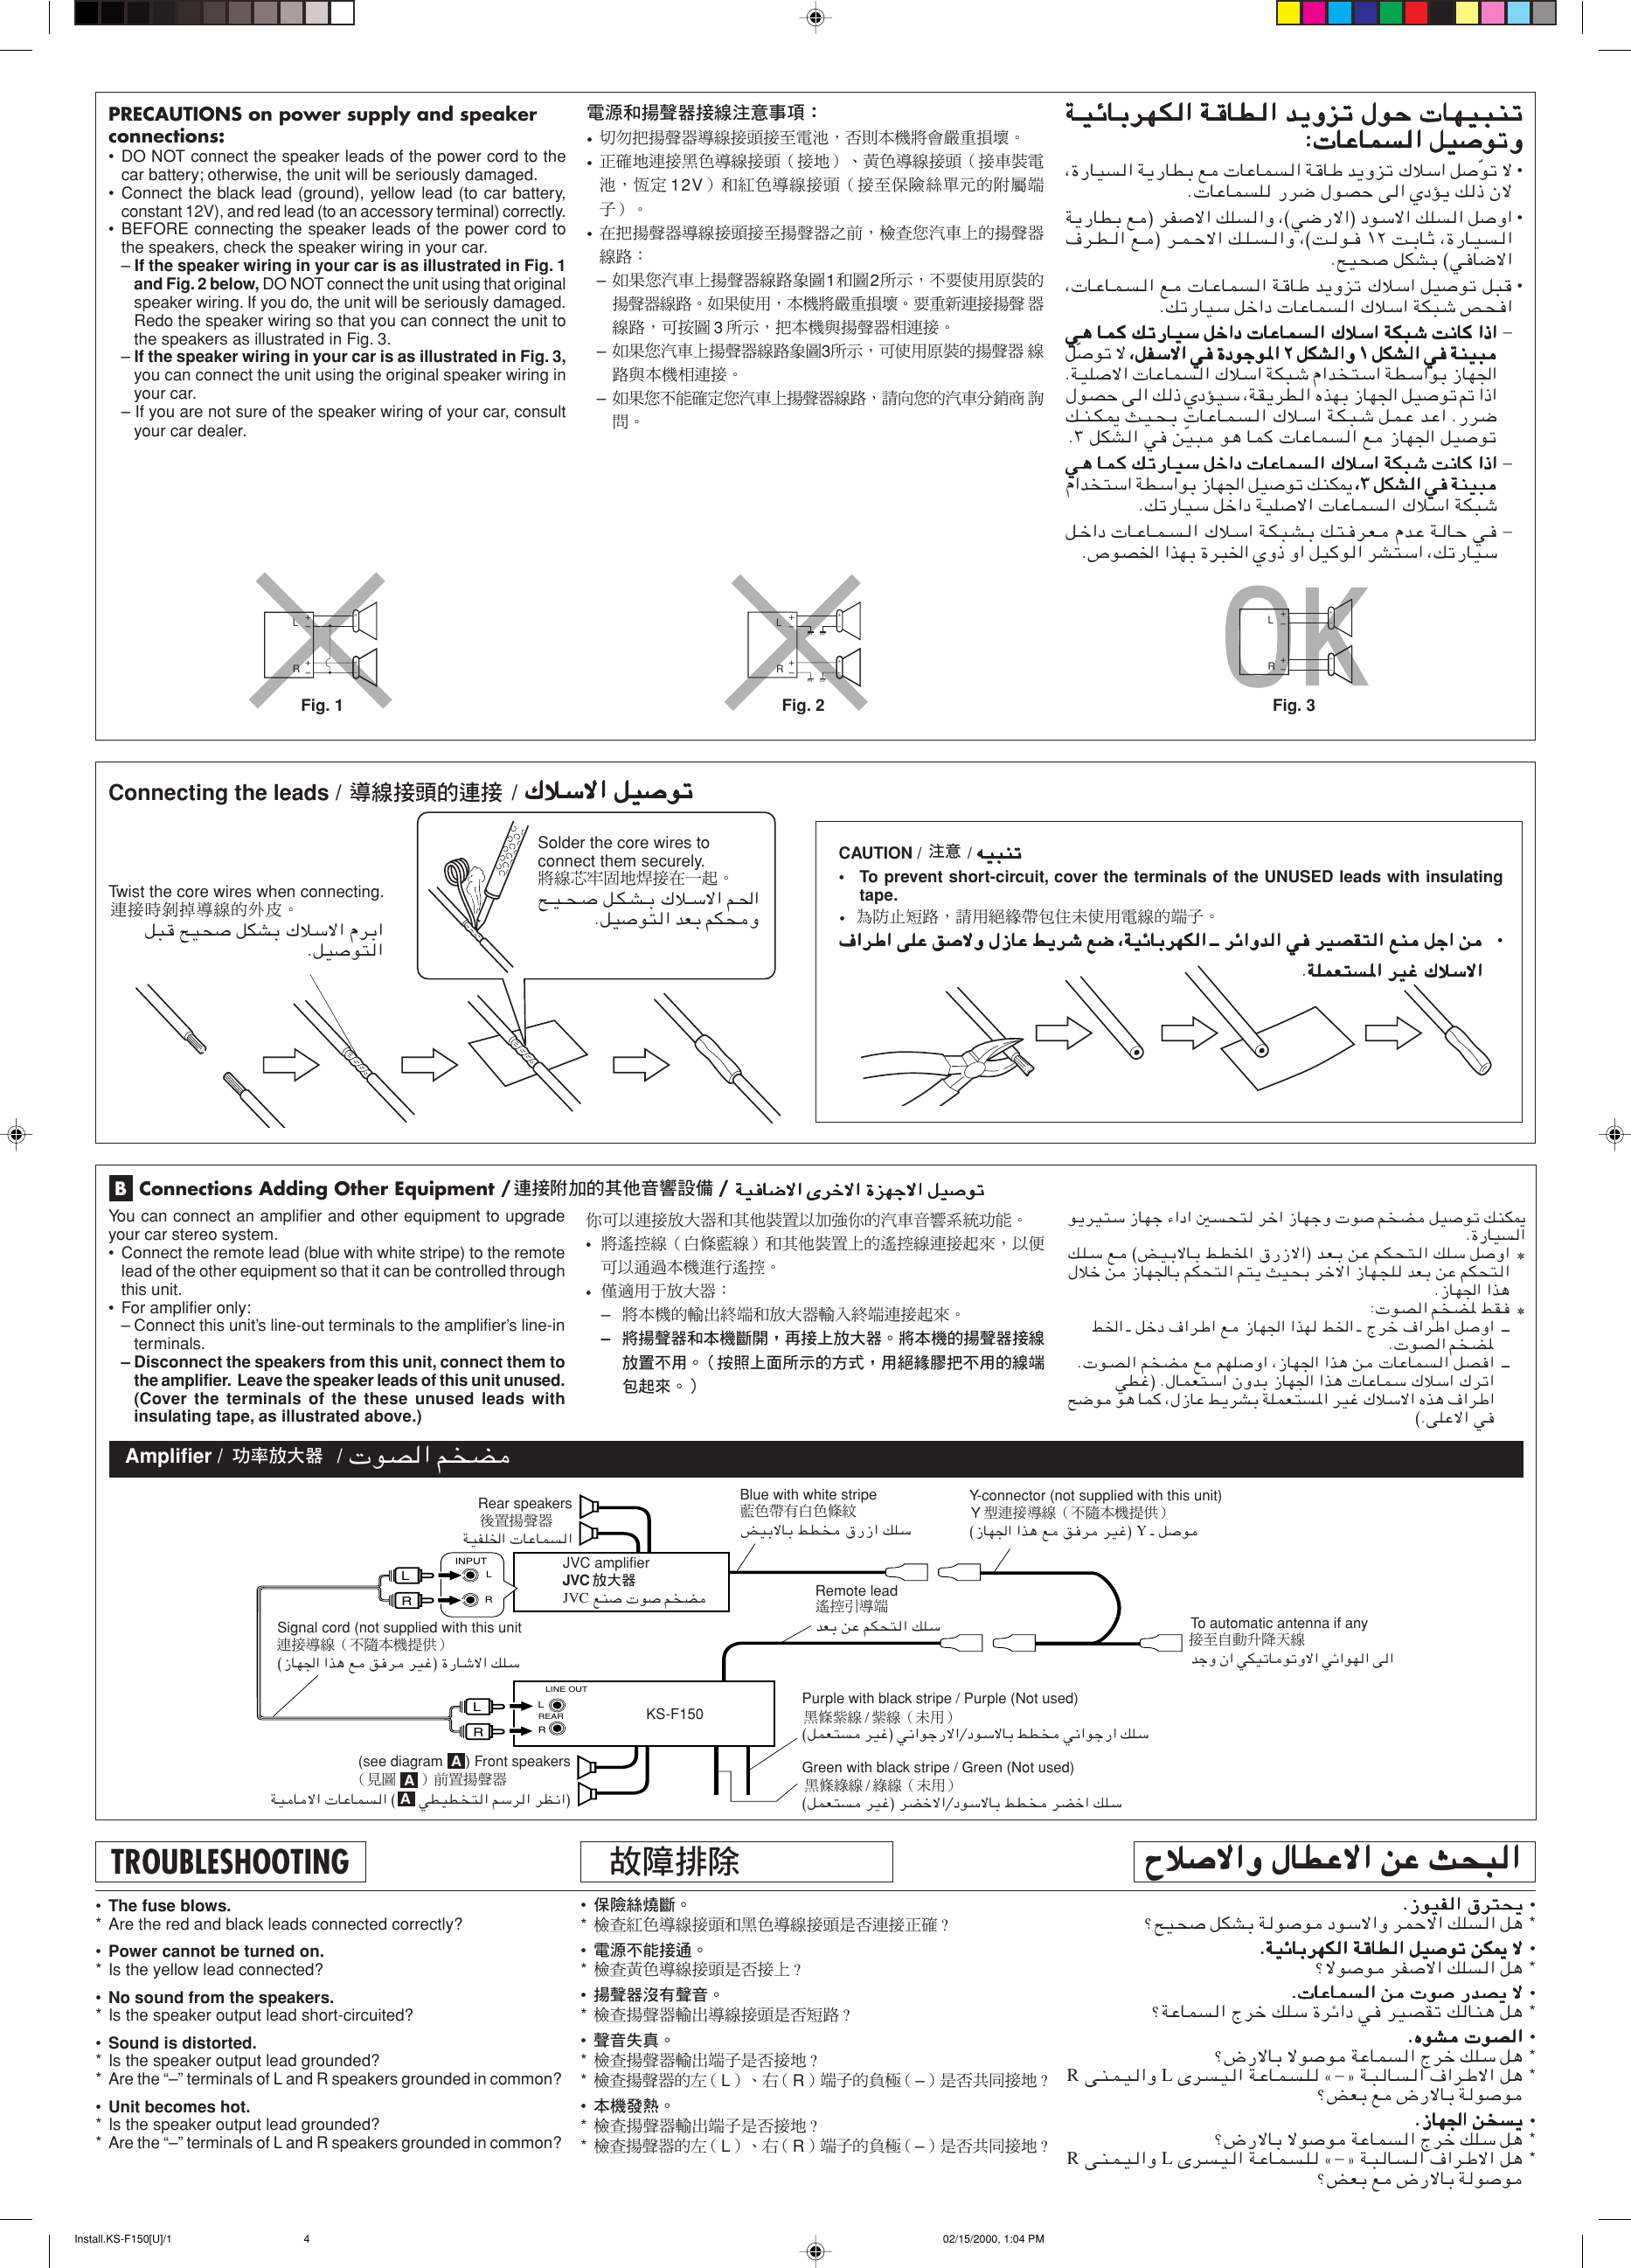 Page 4 of 4 - JVC KS-F150 User Manual FSUN3096-T181